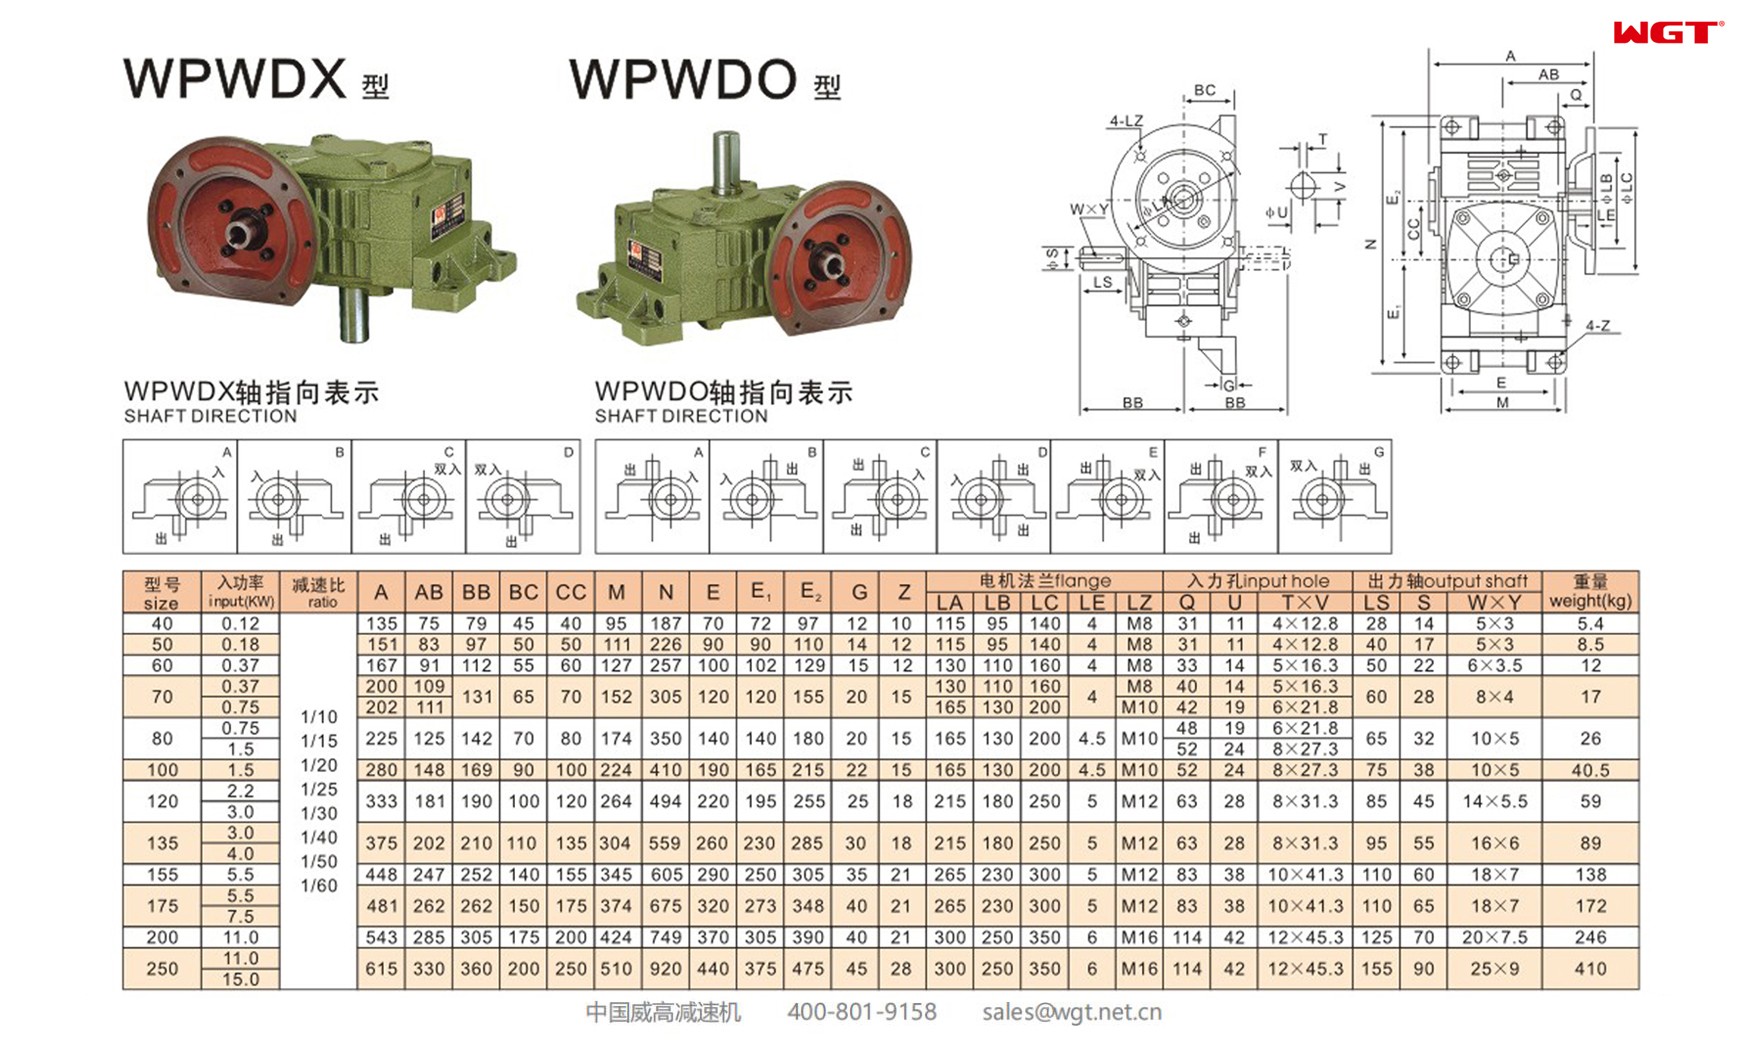 WPWDX120 worm gear reducer universal speed reducer 